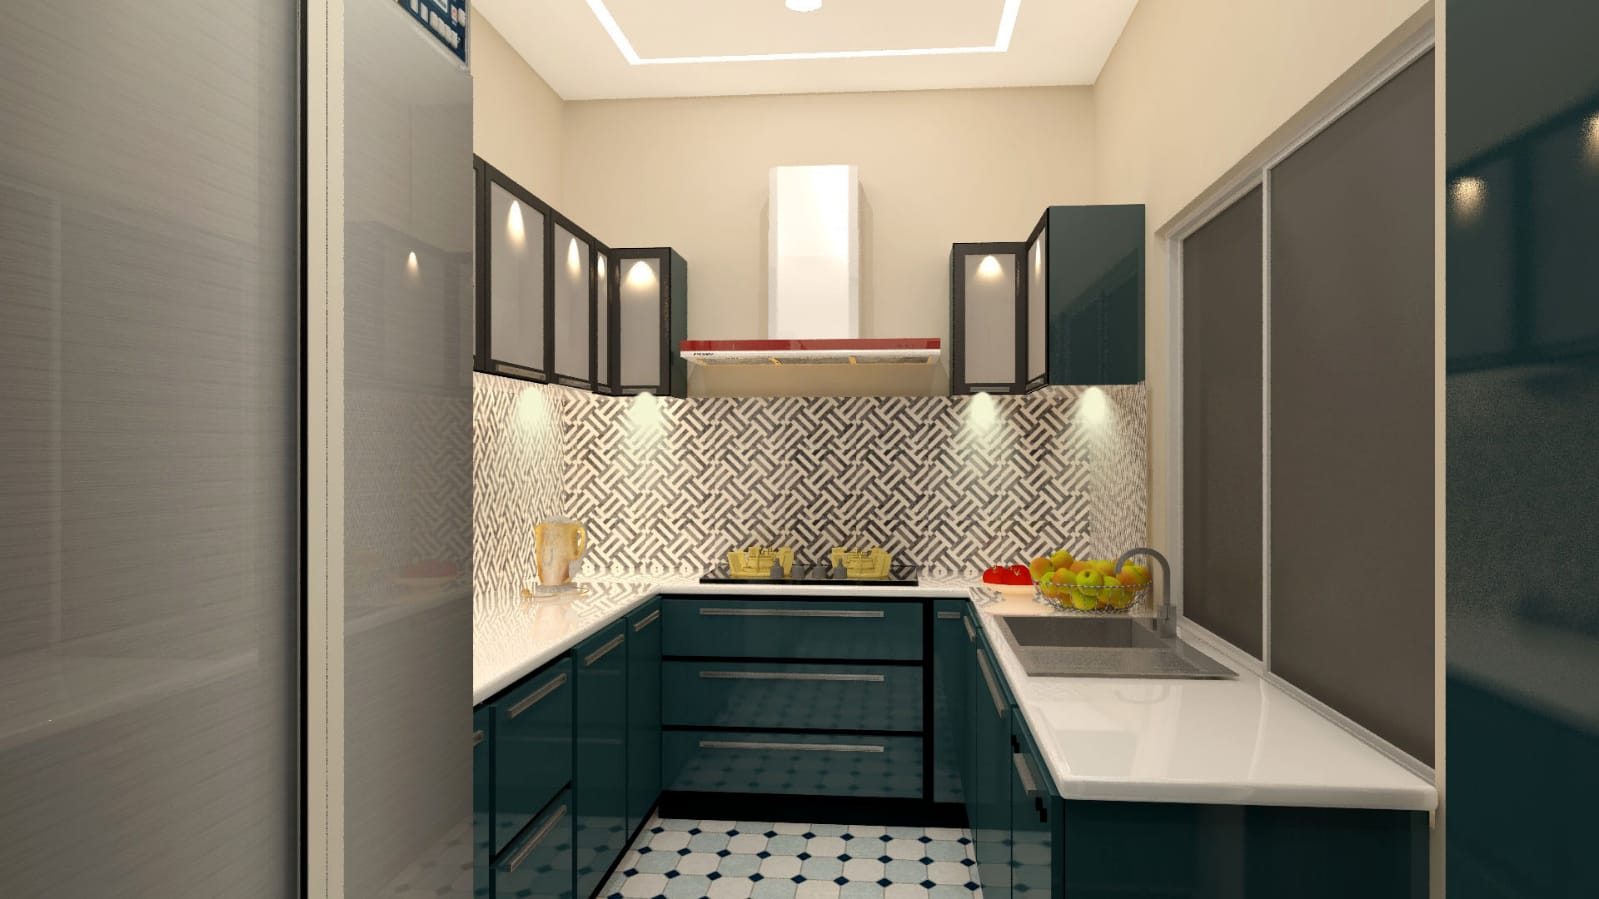 U shaped kitchen-U shaped stainless steel modular kitchen-Asia Fineline-Stainless steel modular kitchen-Colored Stainless Steel Modular kitchen